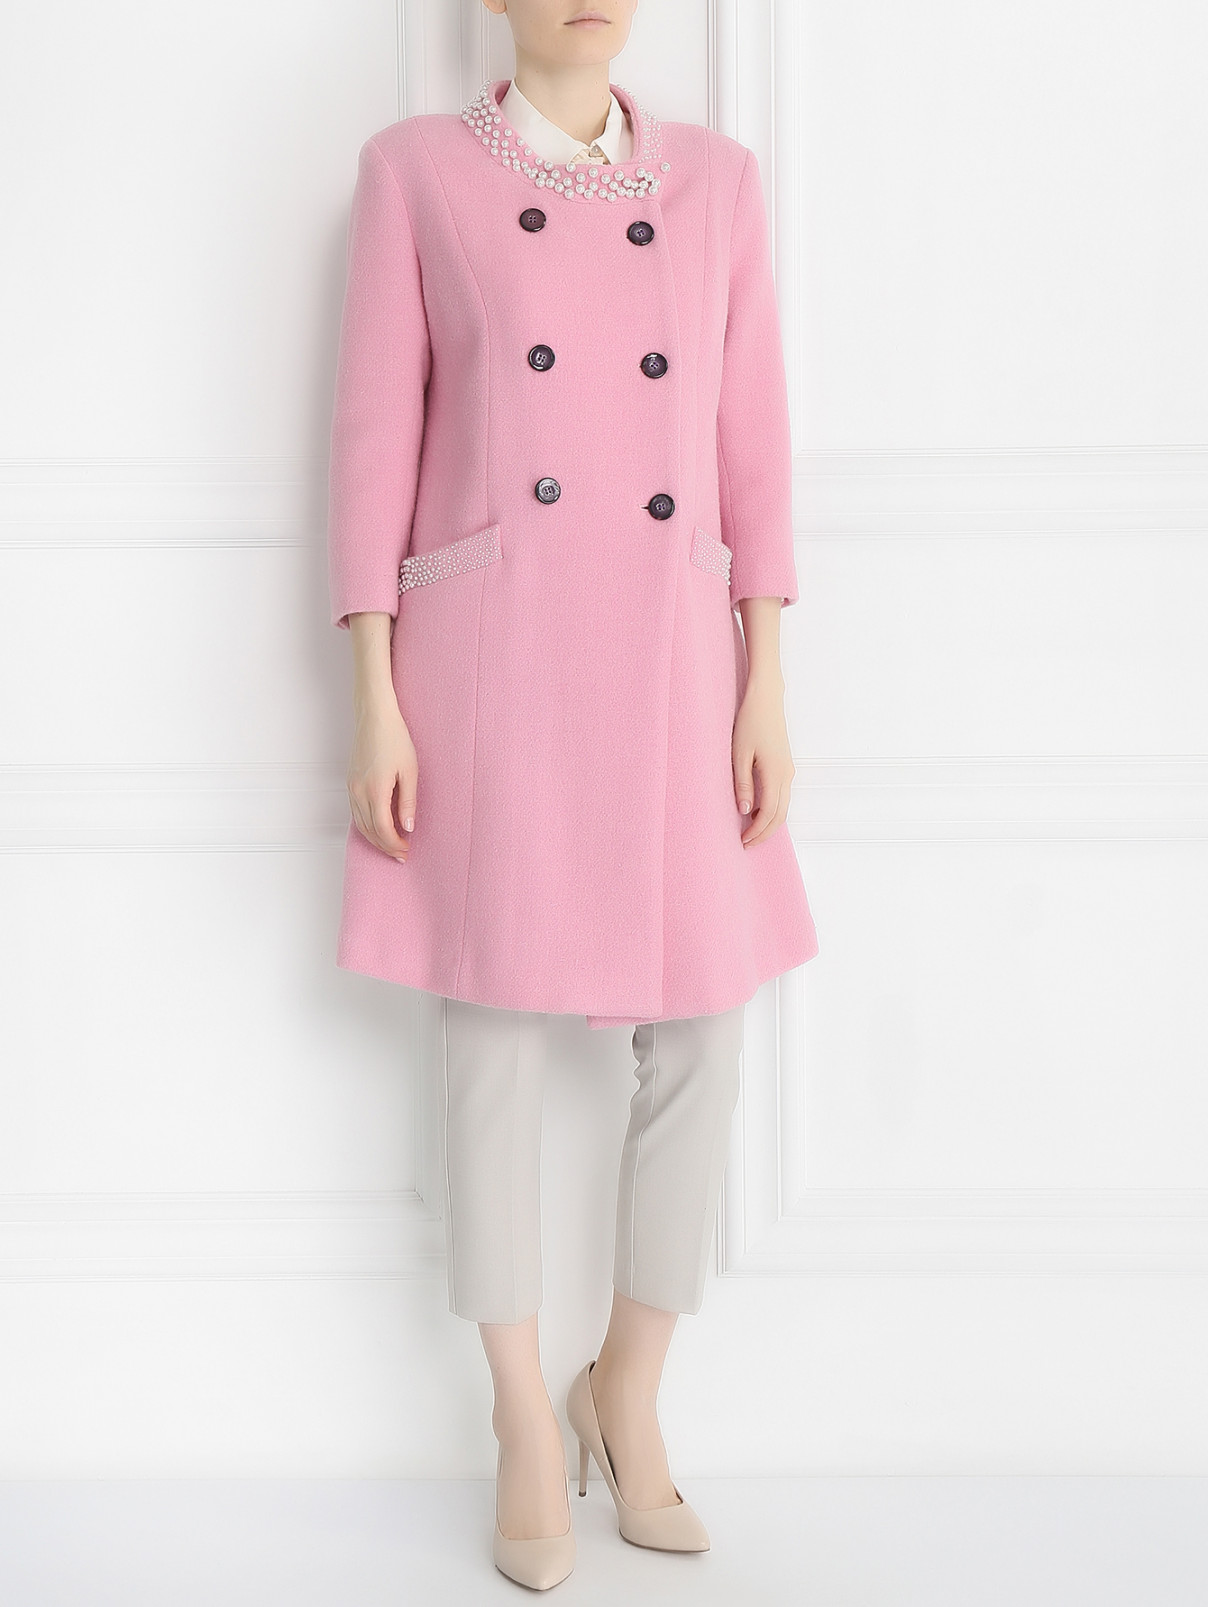 Пальто из шерсти с аппликаций из бусин Femme by Michele R.  –  Модель Общий вид  – Цвет:  Розовый